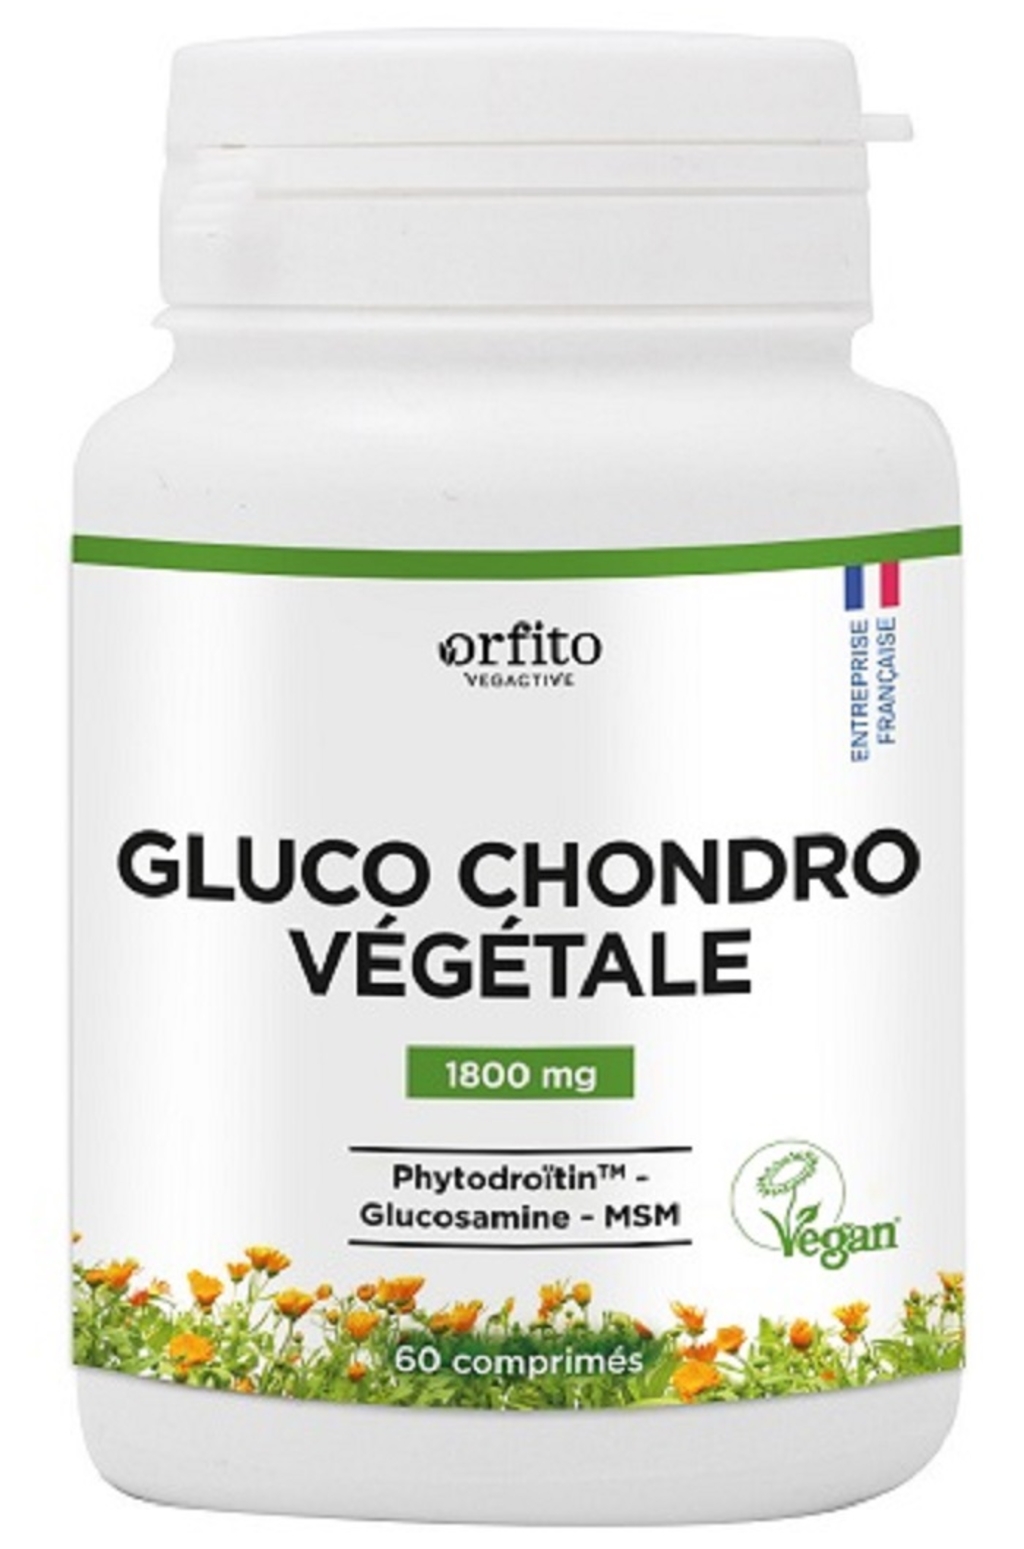 Gluco Chondro Végétale